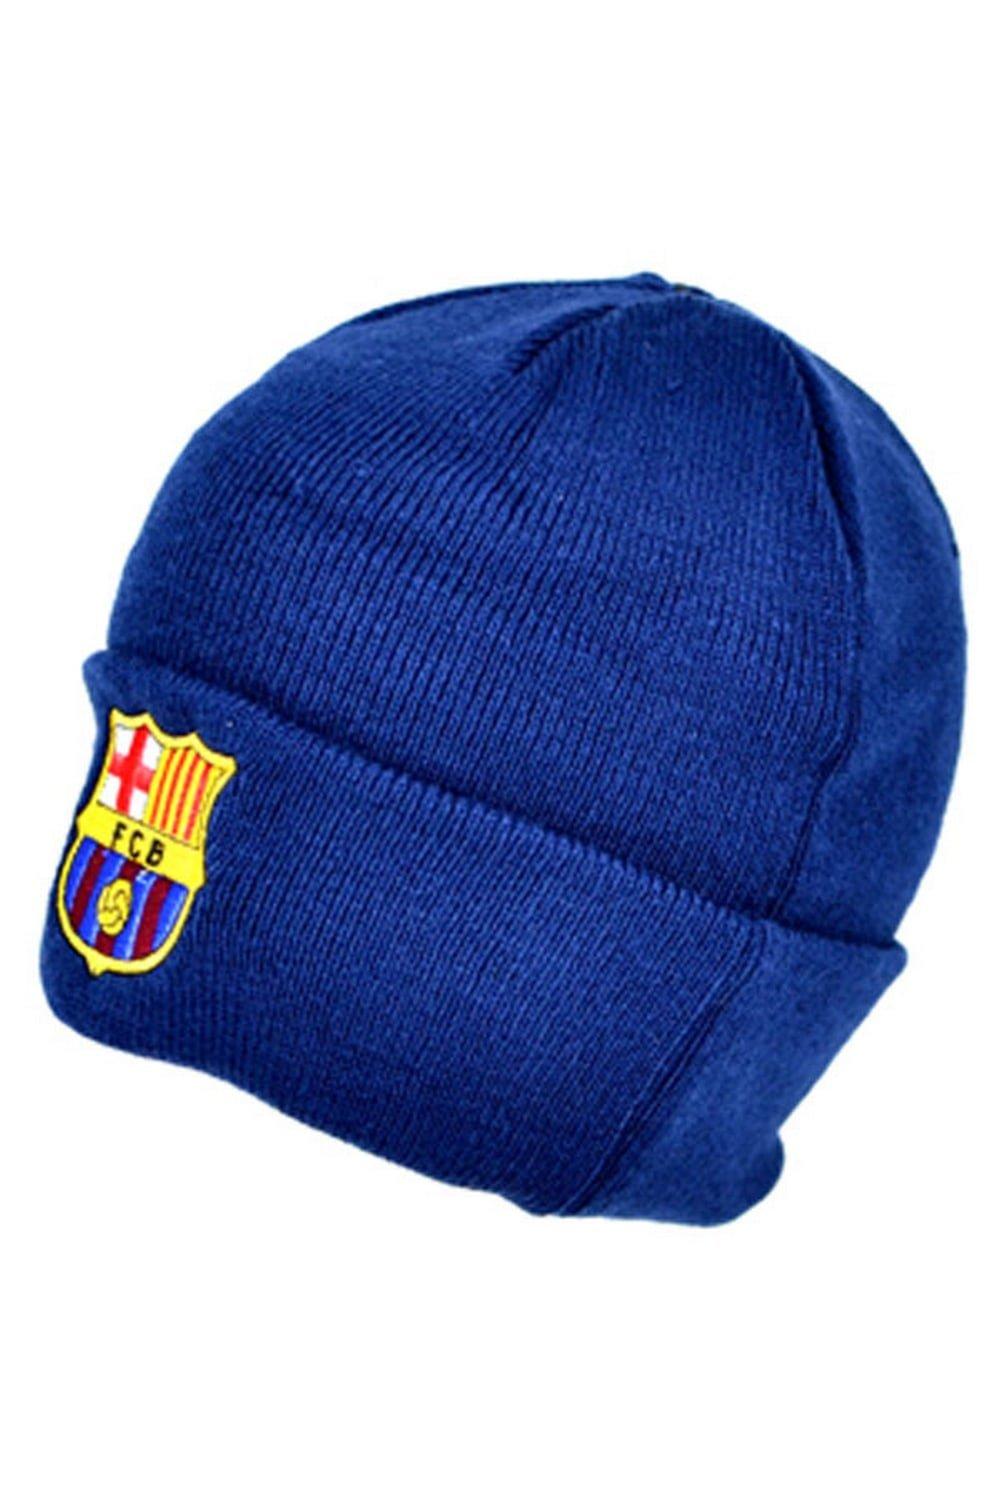 Официальная вязаная зимняя шапка-бини с футбольным гербом FC Barcelona, темно-синий коврик для мышки фк барселона